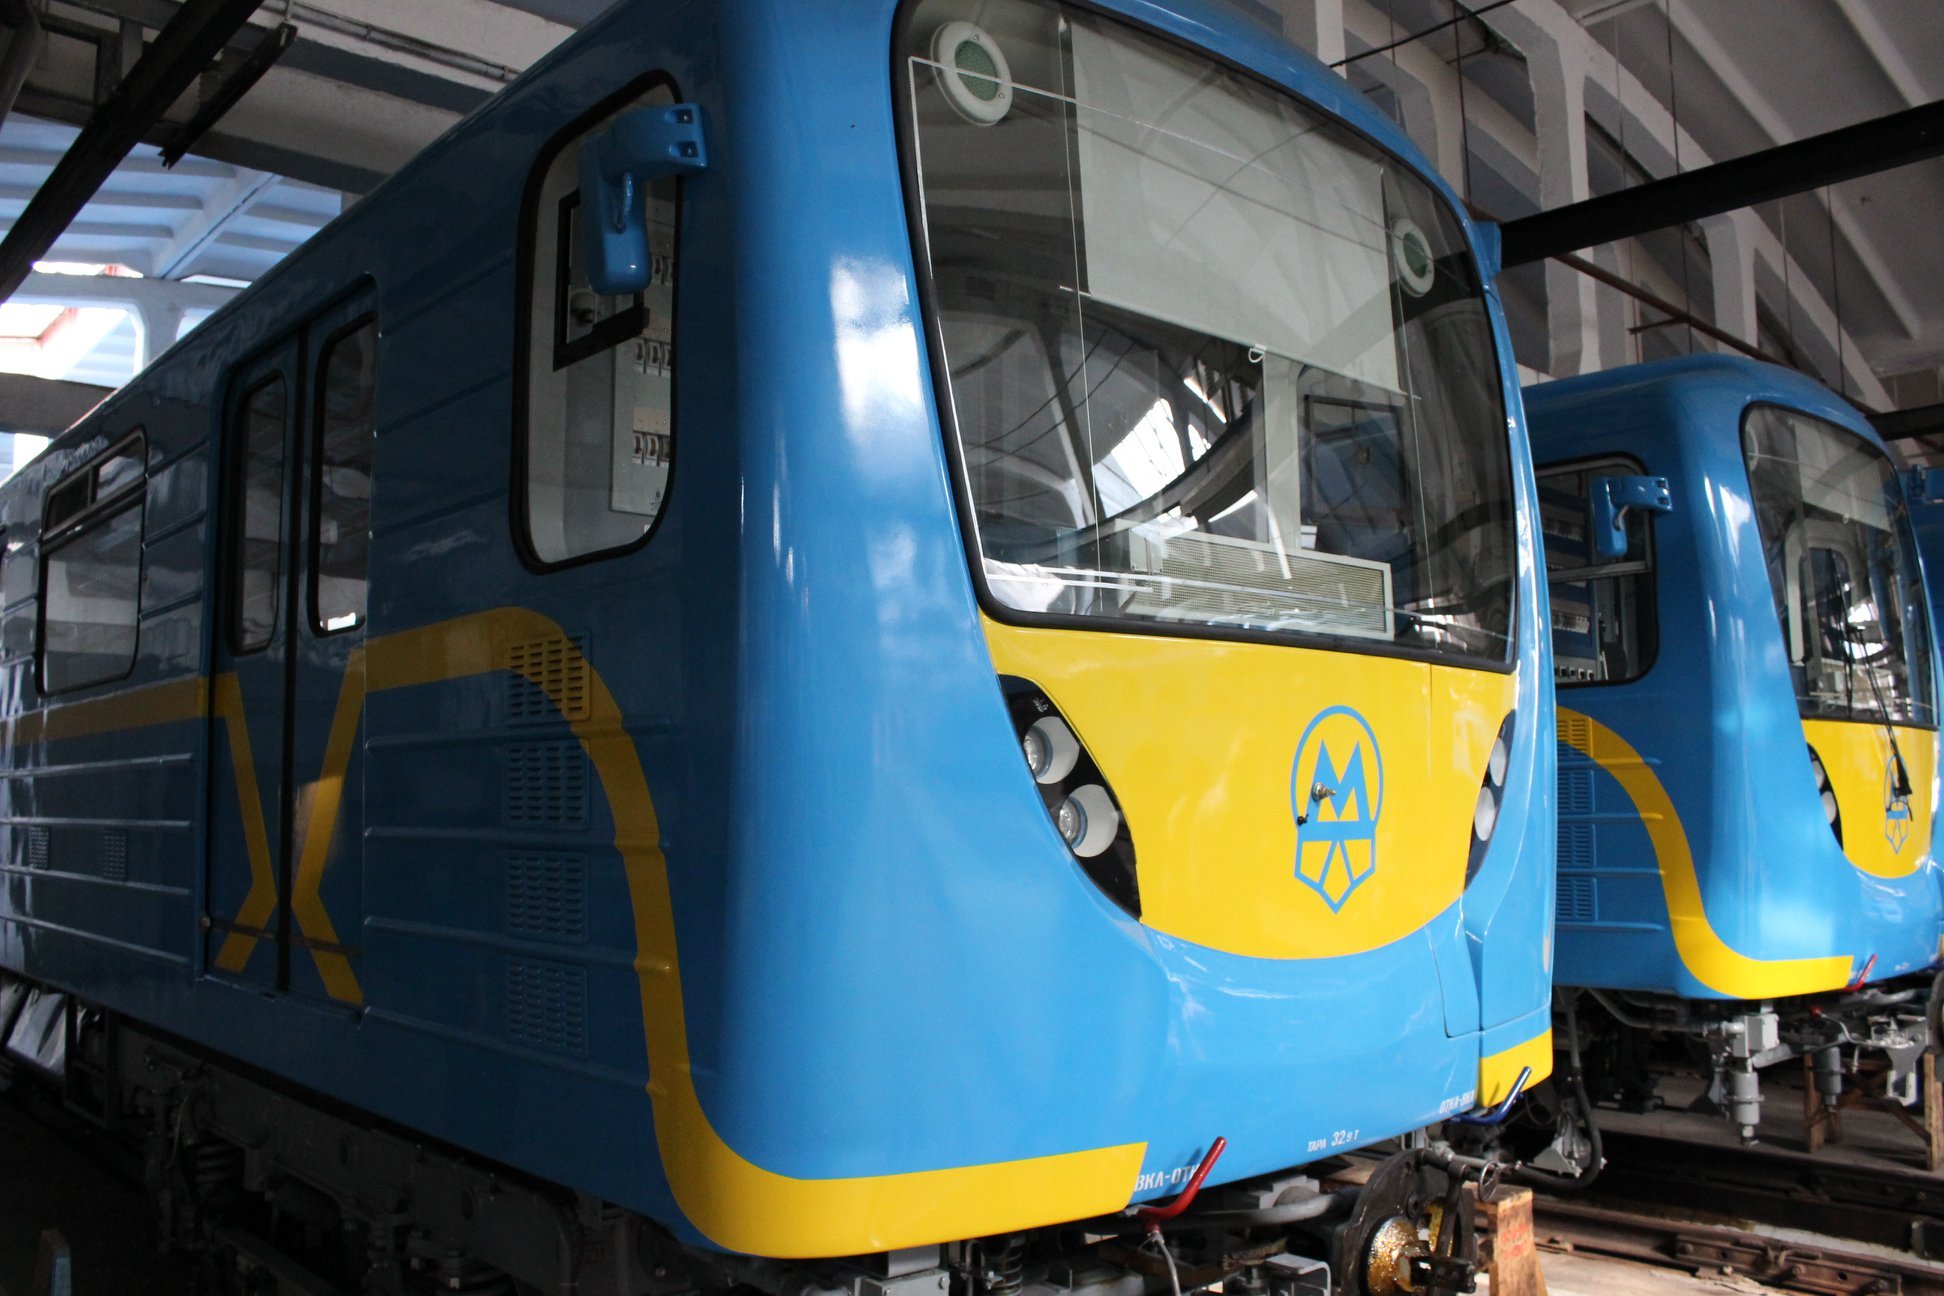 ЕБРР одобрил выделение 50 млн евро на покупку вагонов для столичного метро (фото)